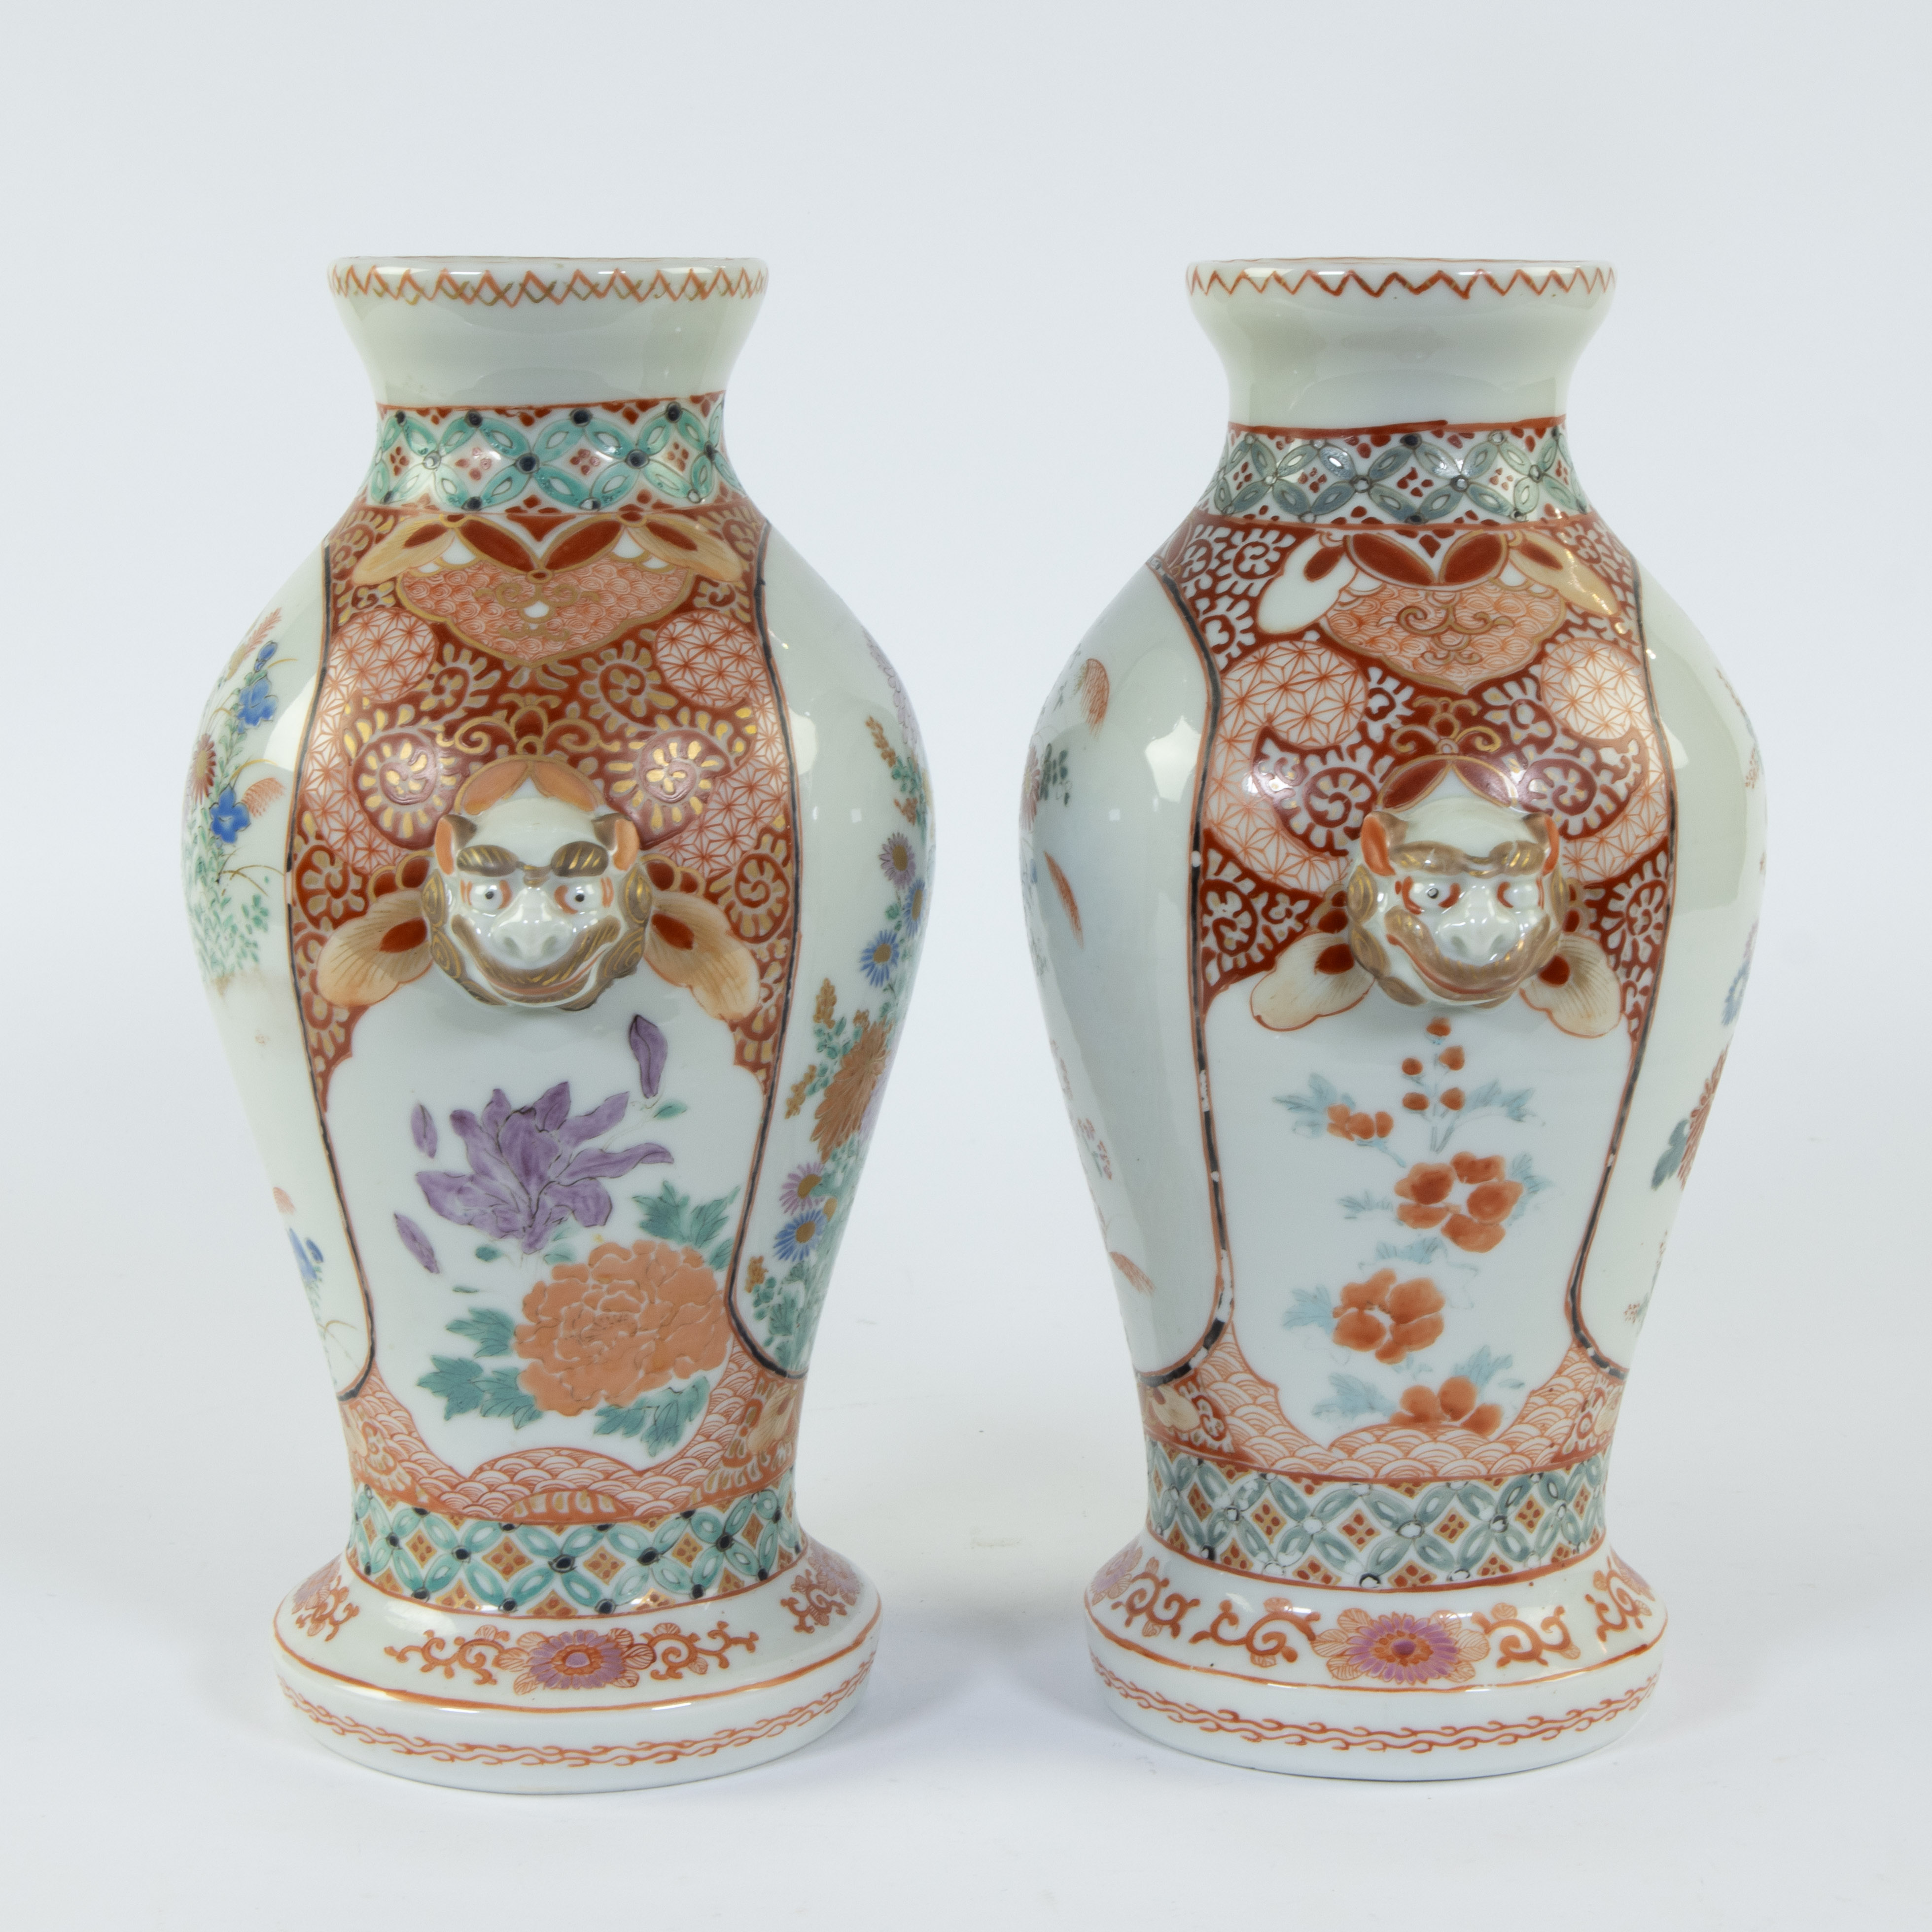 Pair of Japanese Imari vases - Image 4 of 5